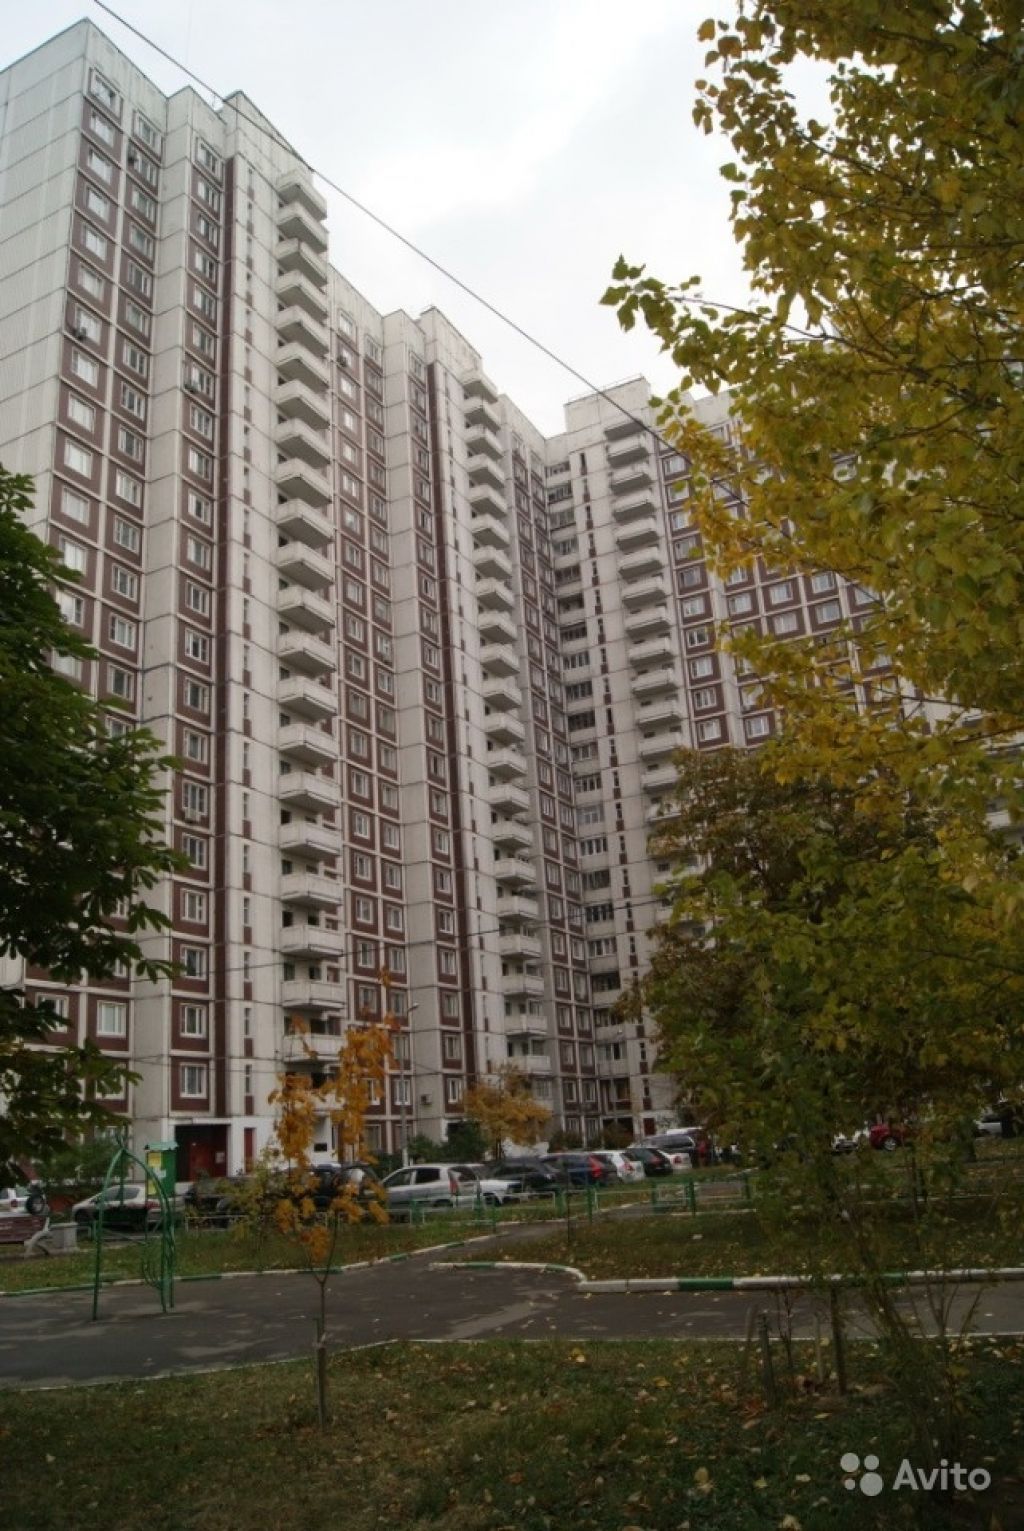 Продам квартиру 4-к квартира 101 м² на 20 этаже 22-этажного панельного дома в Москве. Фото 1